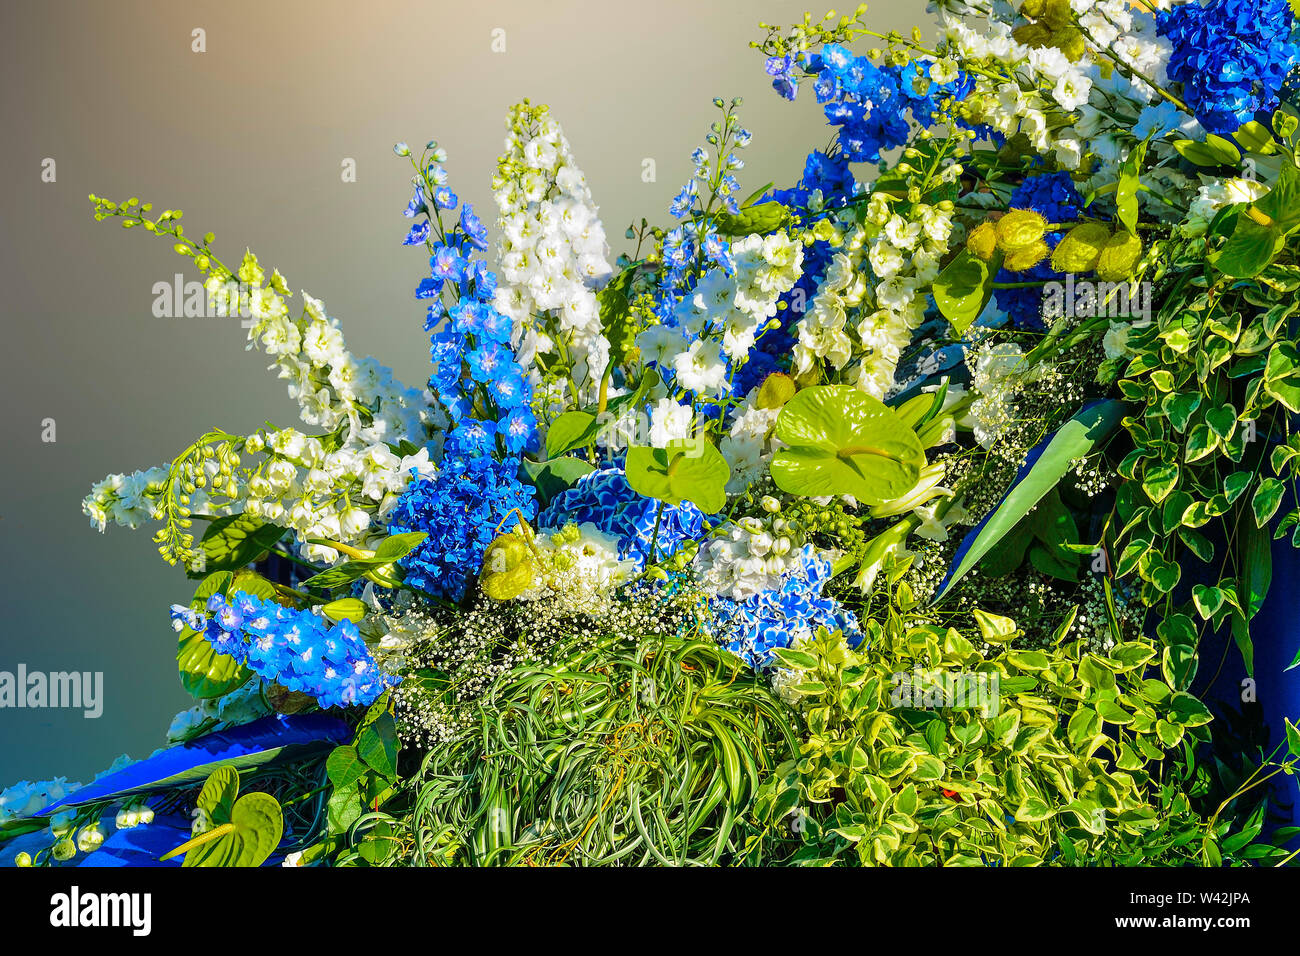 Hermosa composición floral de color blanco y azul, hortensias, delphiniums anthuriums y variopinta hojas de plantas ornamentales precioso bouquet de Foto de stock